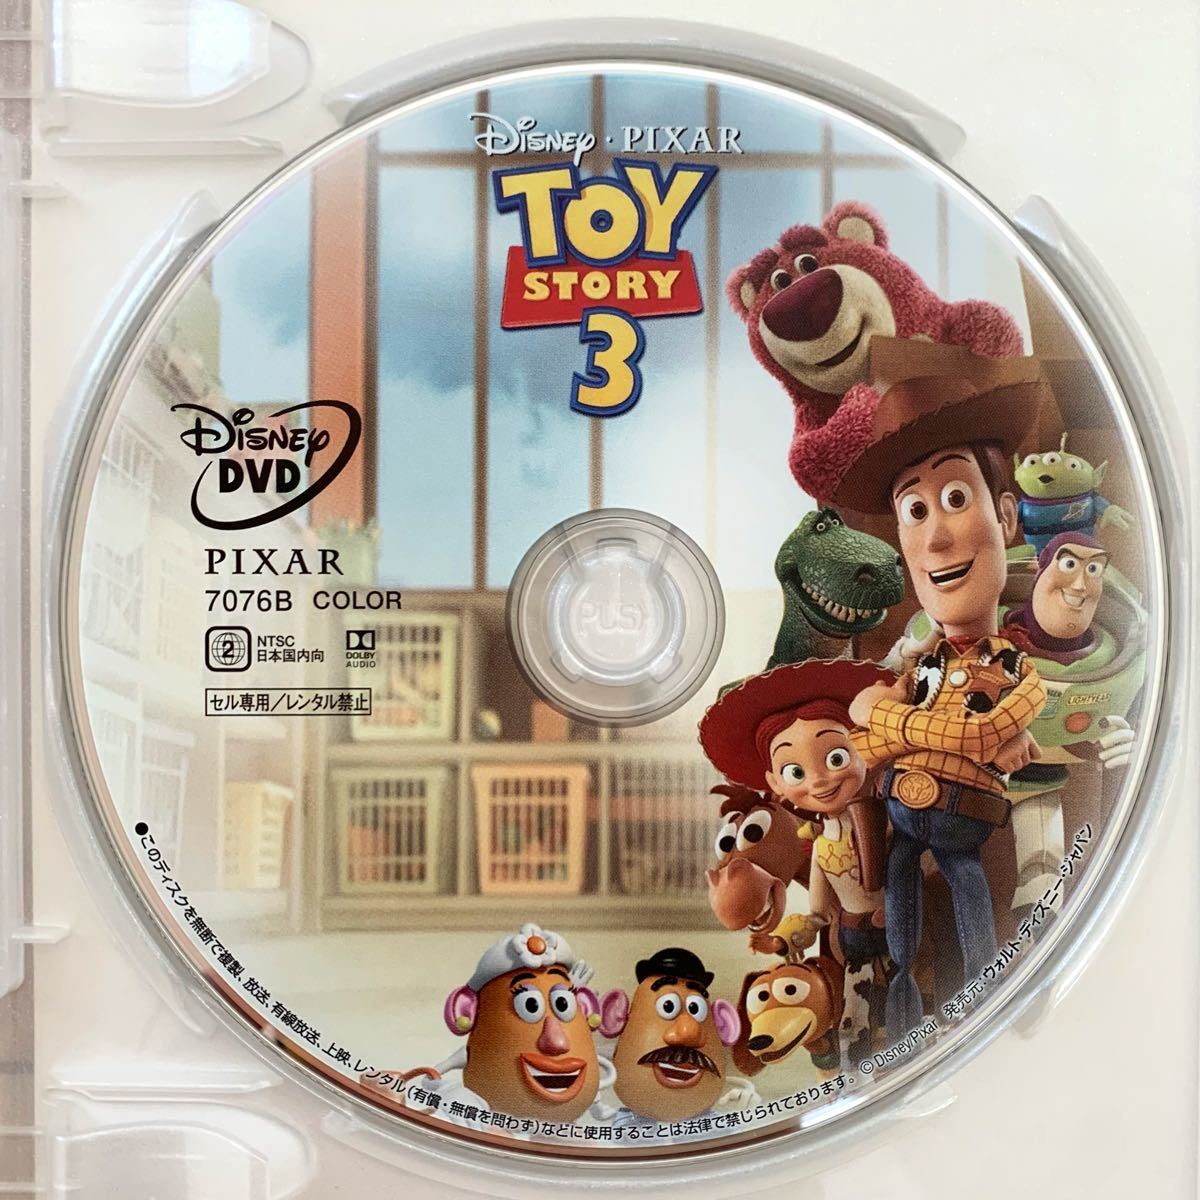 【DVD全作セット】『トイ・ストーリー1、2、3、4』DVDセット 新品未再生 ディズニー ピクサー movienex